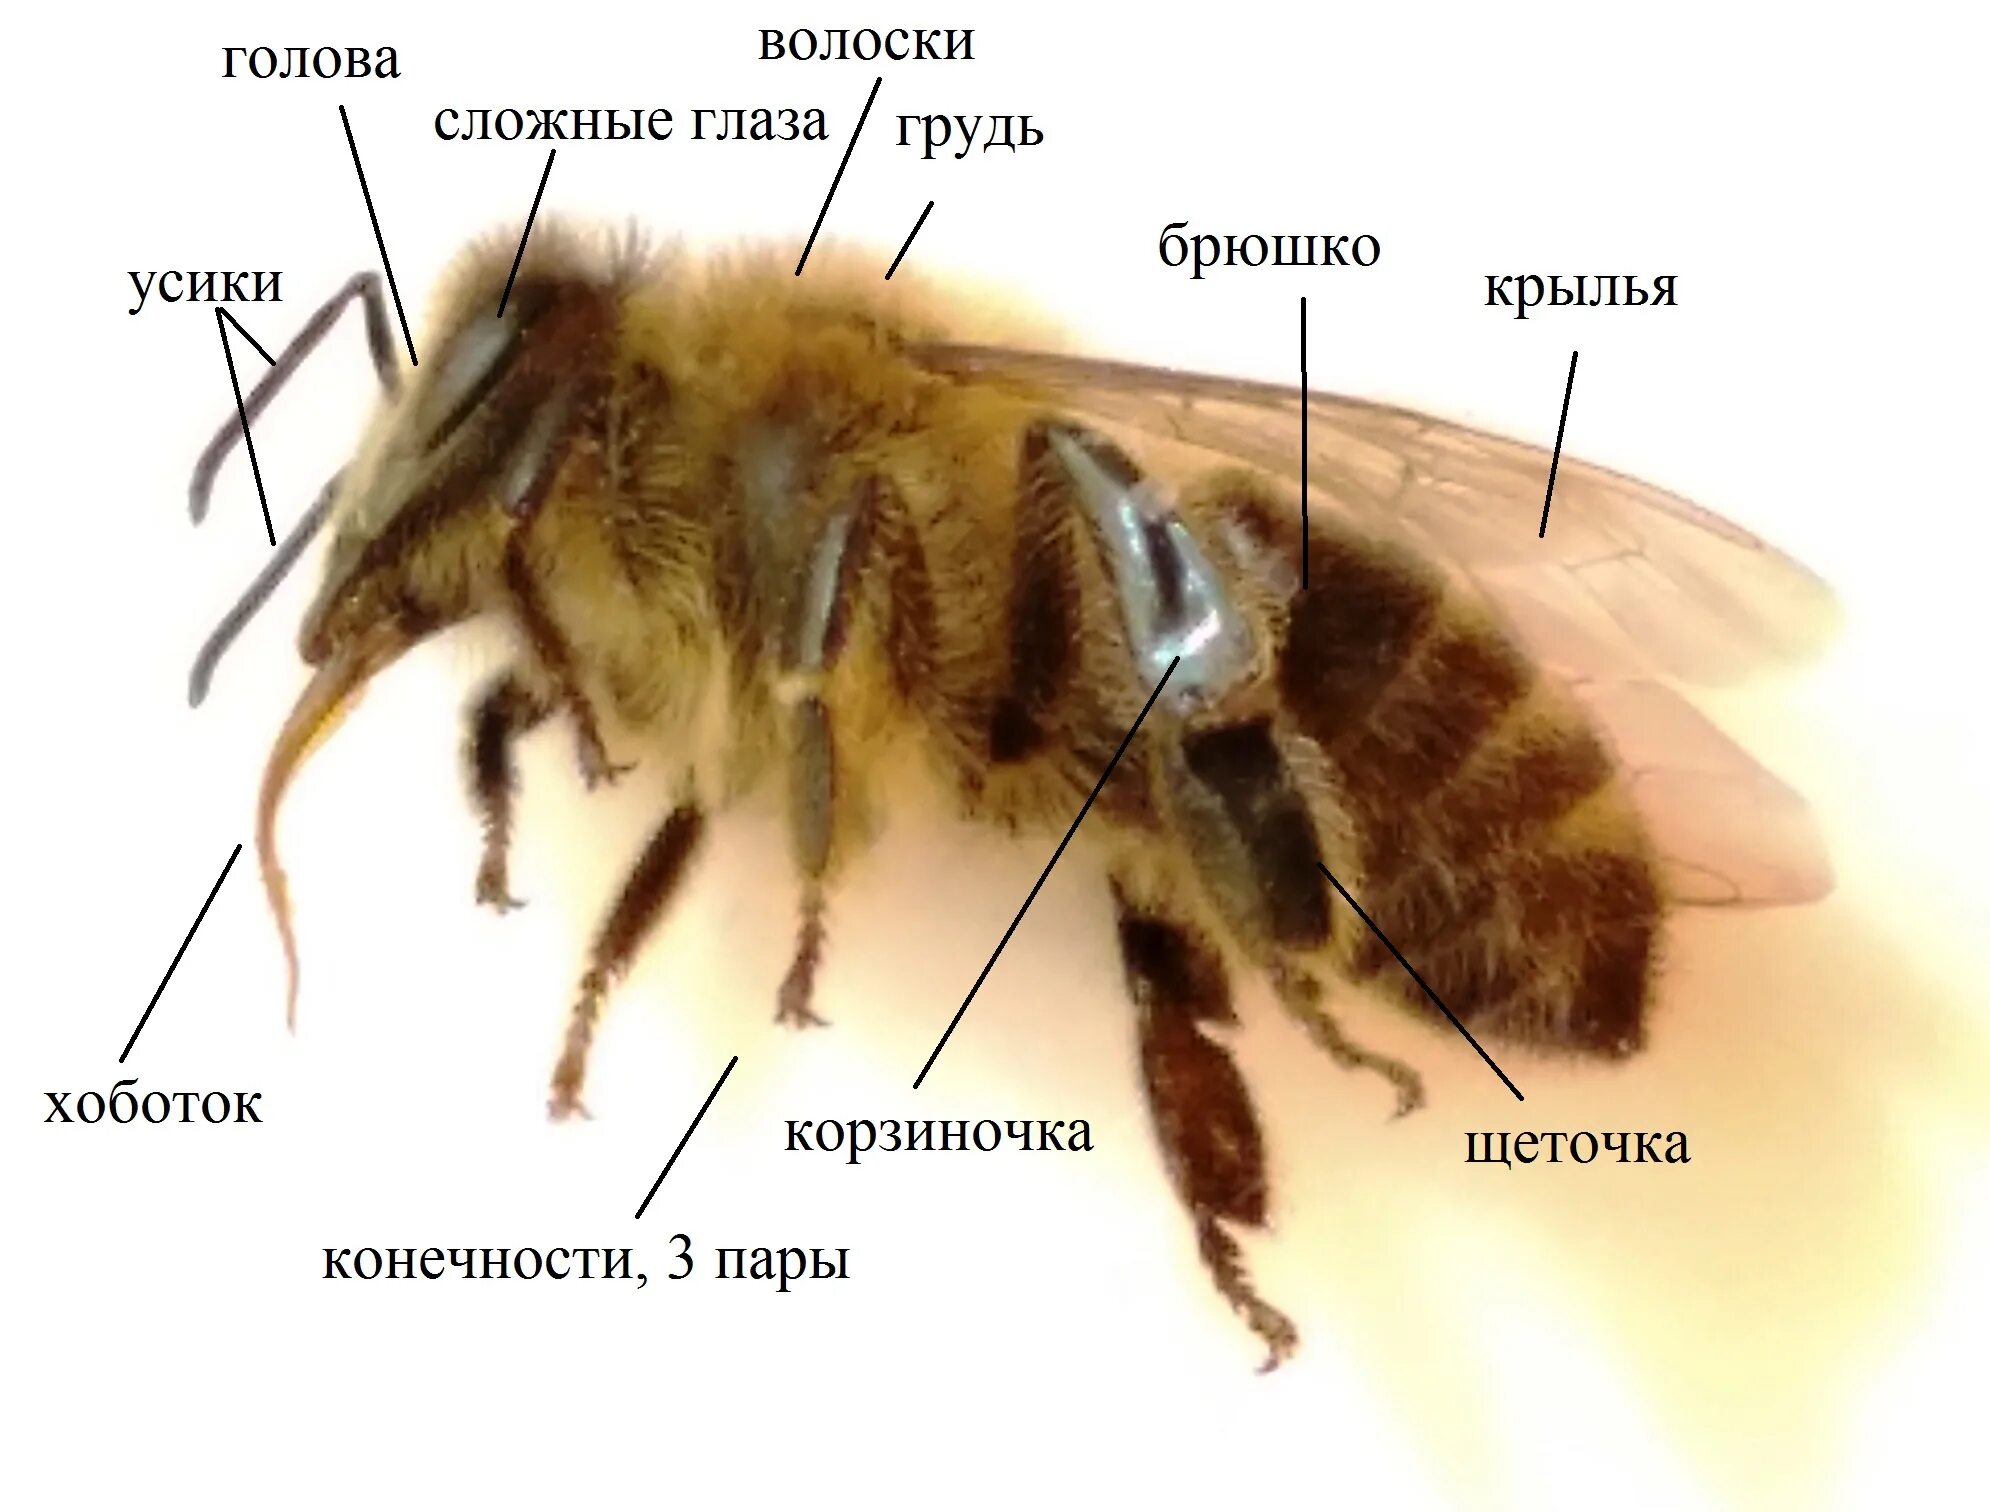 Анатомия пчелы медоносной. Строение пчелы медоносной. Внешнее строение пчелы. Строение тела пчелы медоносной.